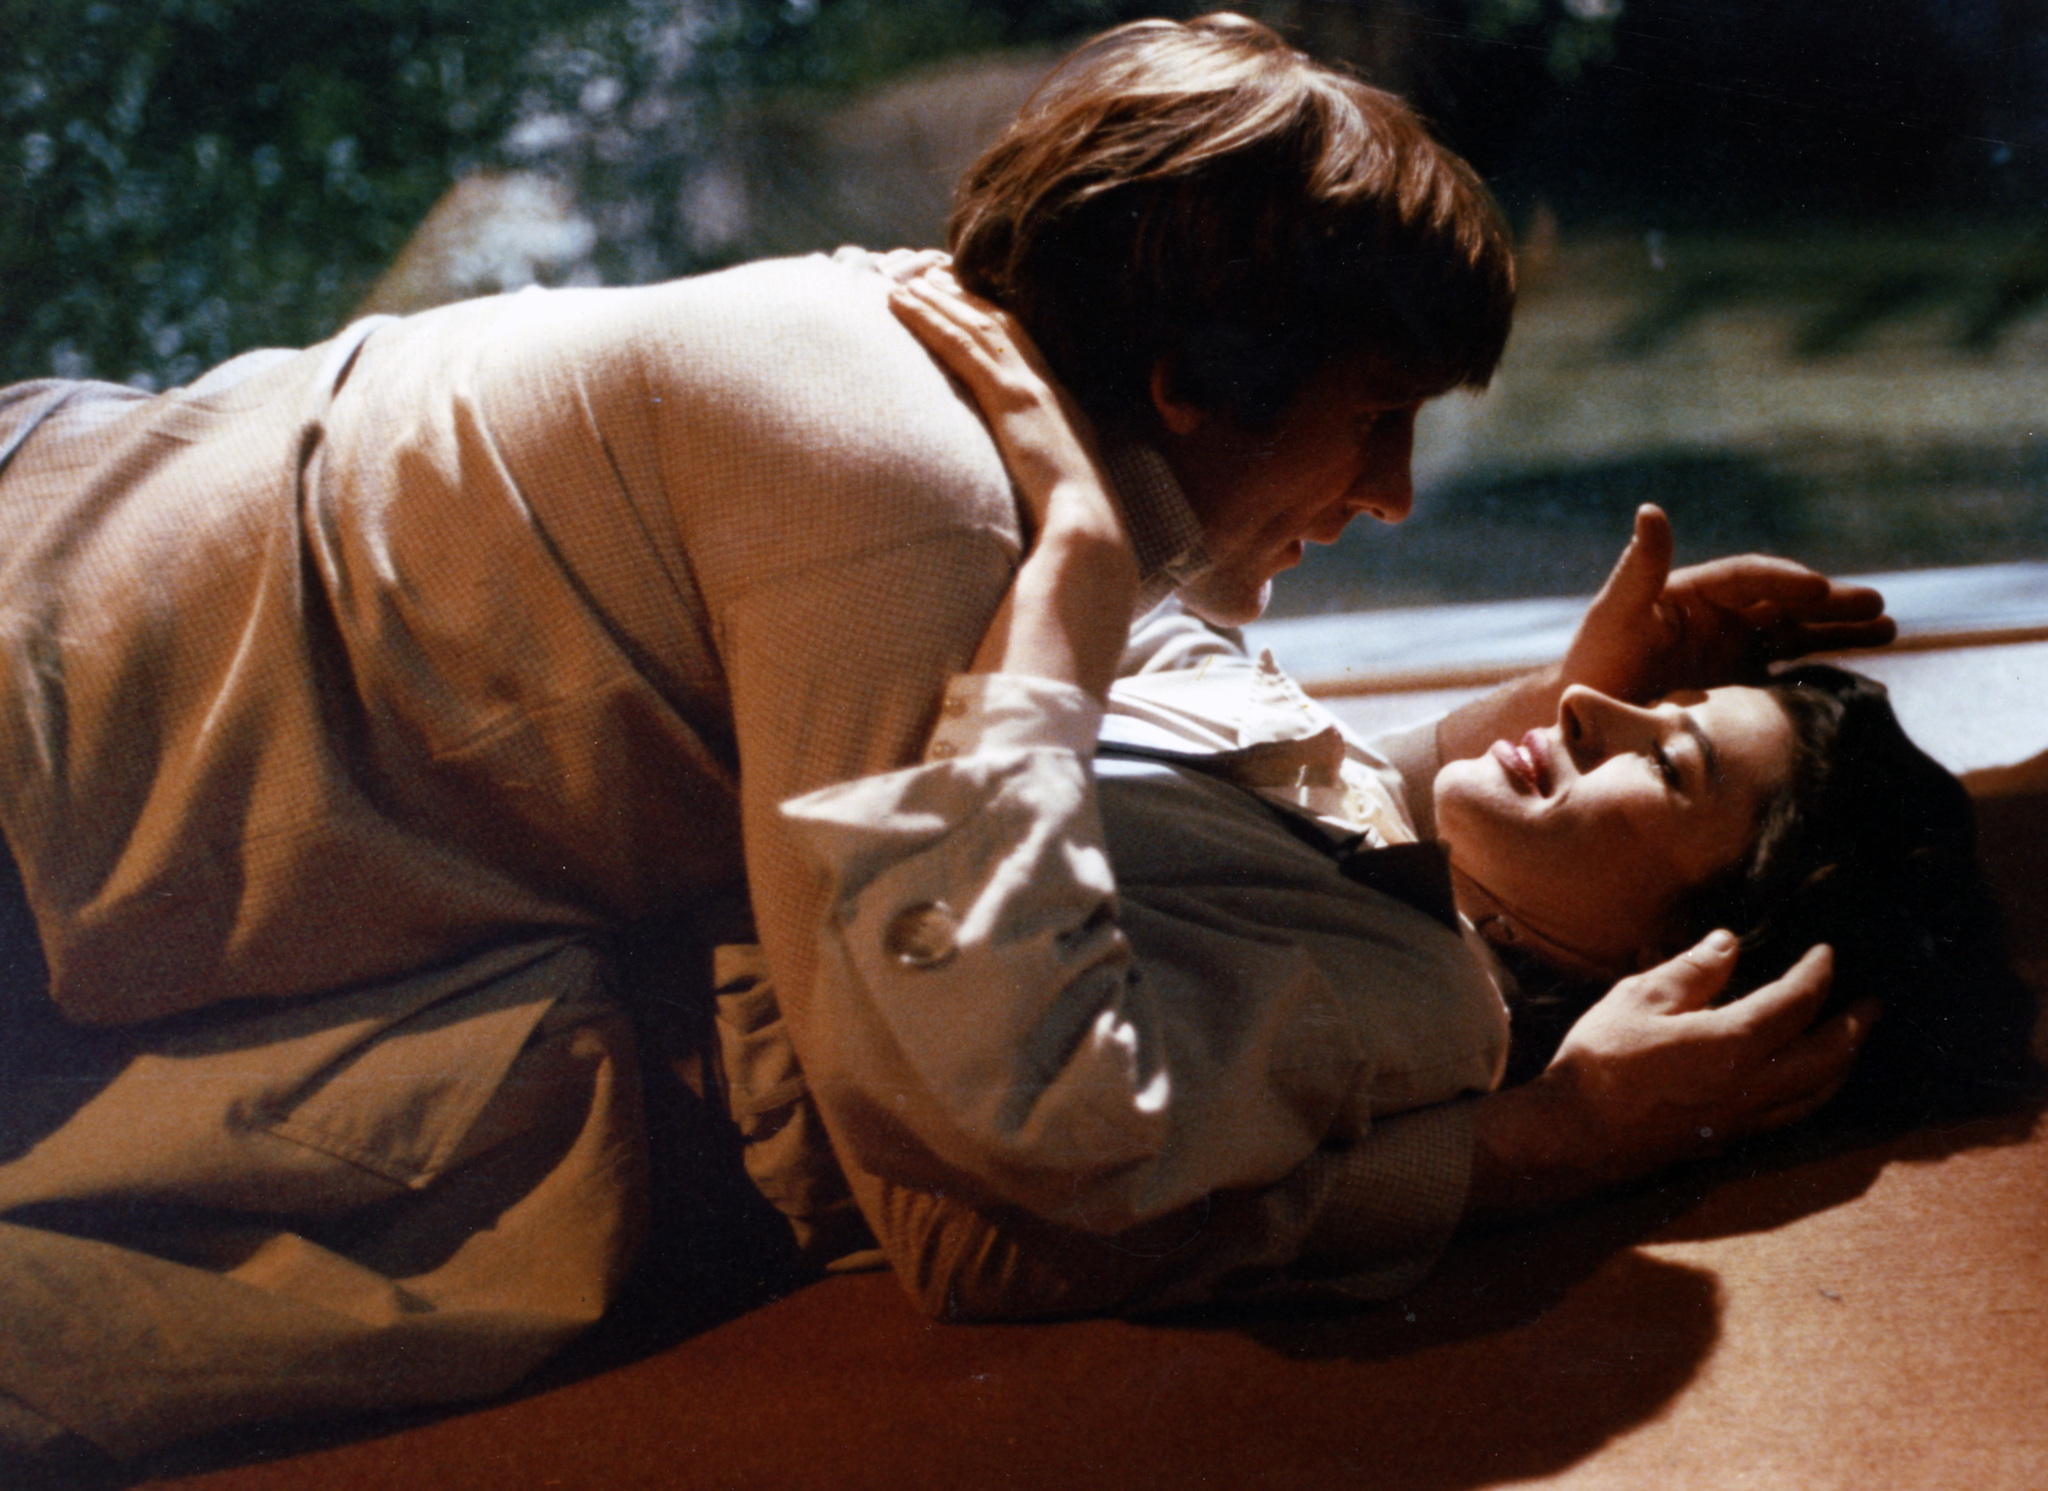 Still of Fanny Ardant and Gérard Depardieu in La femme d'à côté (1981)